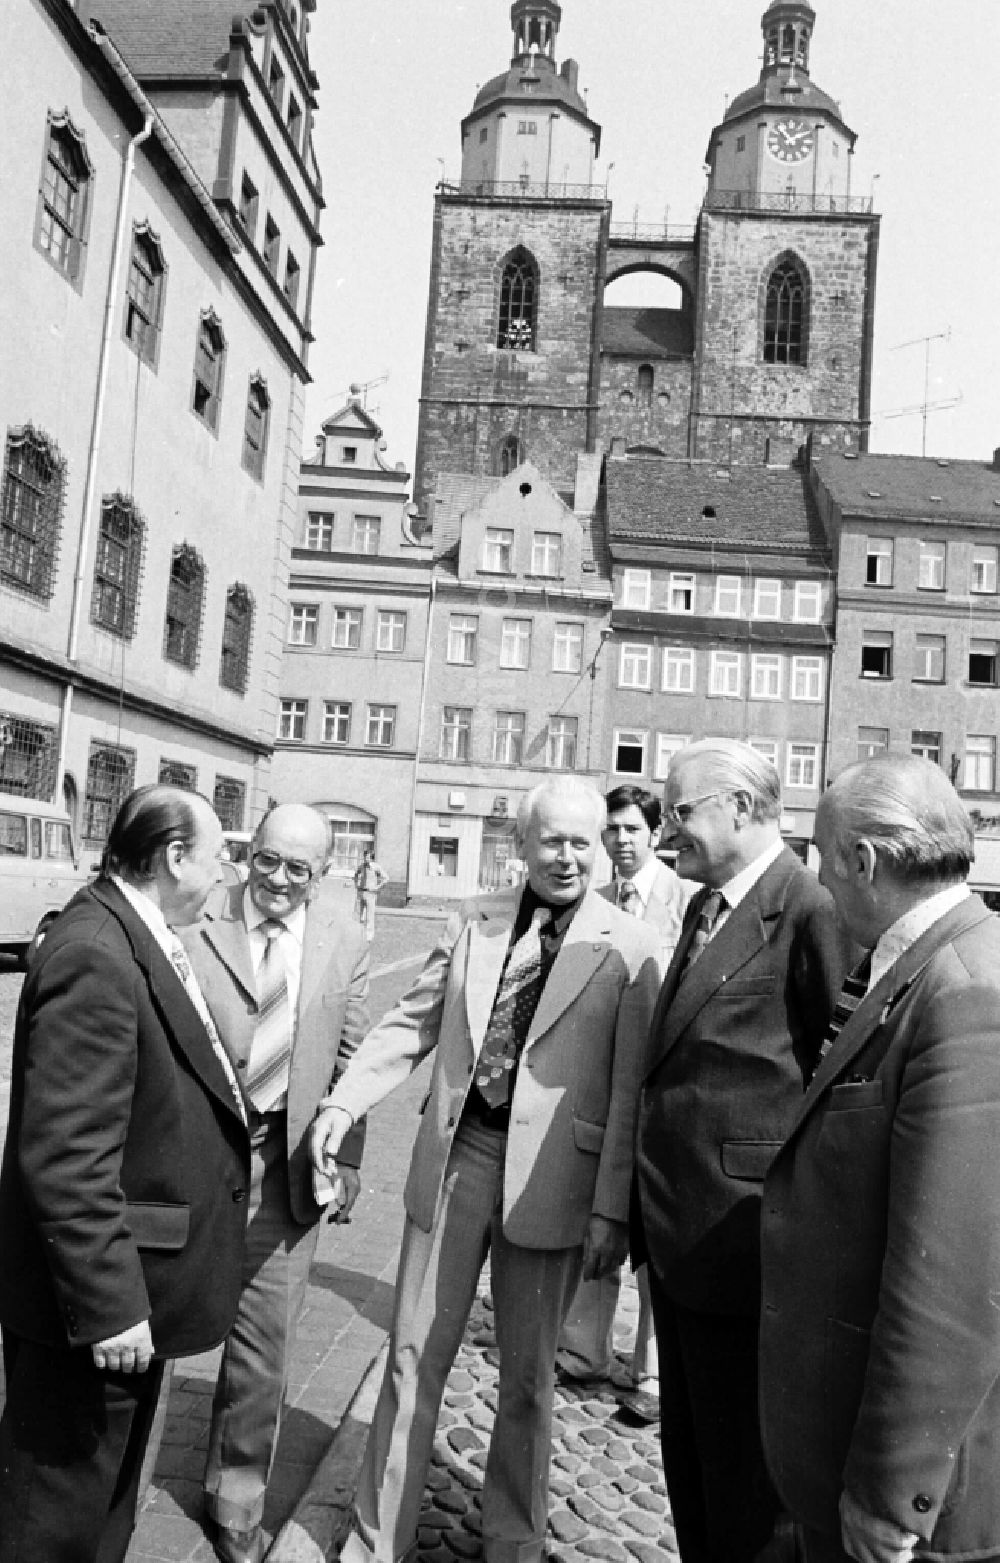 DDR-Bildarchiv: Lutherstadt Wittenberg - Stadtrundgang General G. Göttnig besucht die Stadt Lutherstadt Wittenberg in Sachsen-Anhalt in der DDR